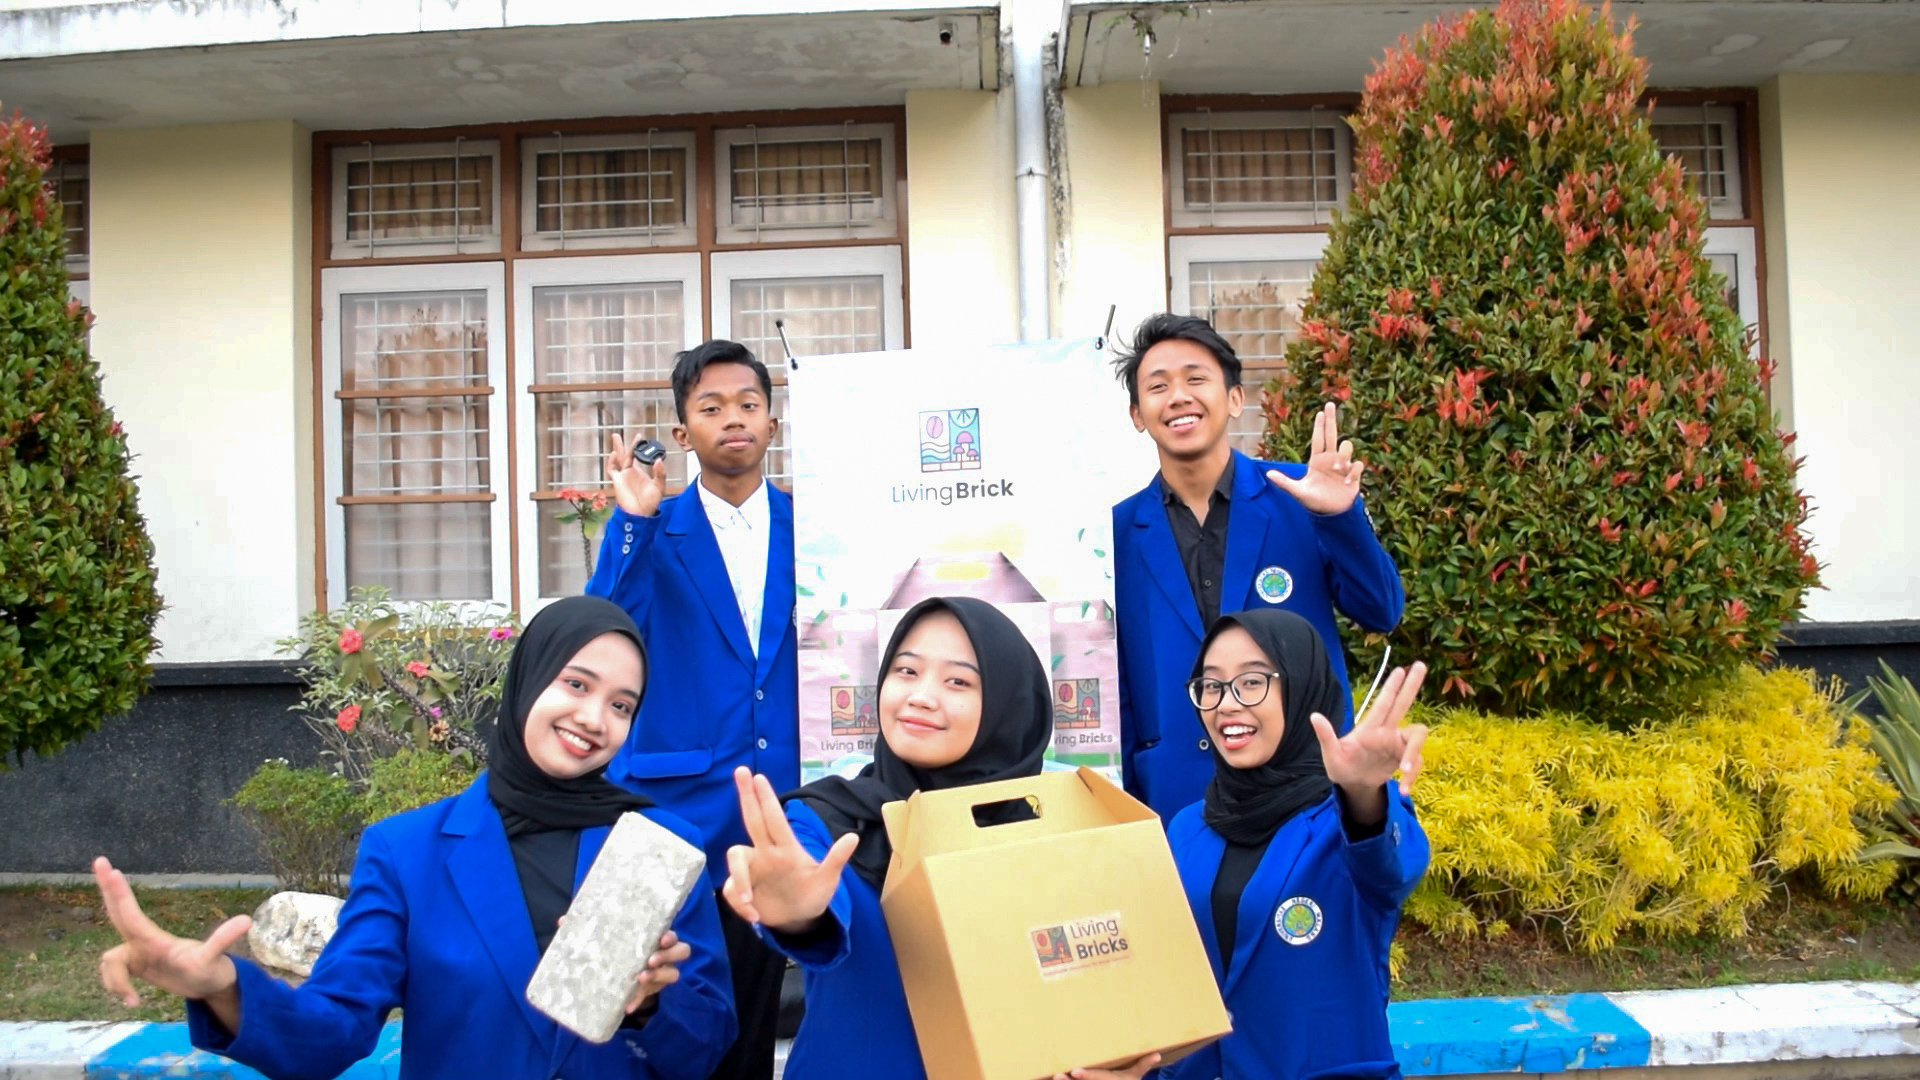 Living Bricks, Inovasi Batu Bata Ajaib sebagai Solusi Praktis Media Tanam Vertikal Garden Ciptaan 5 Mahasiswa Universitas Negeri Malang dalam mendukung SDGs 12